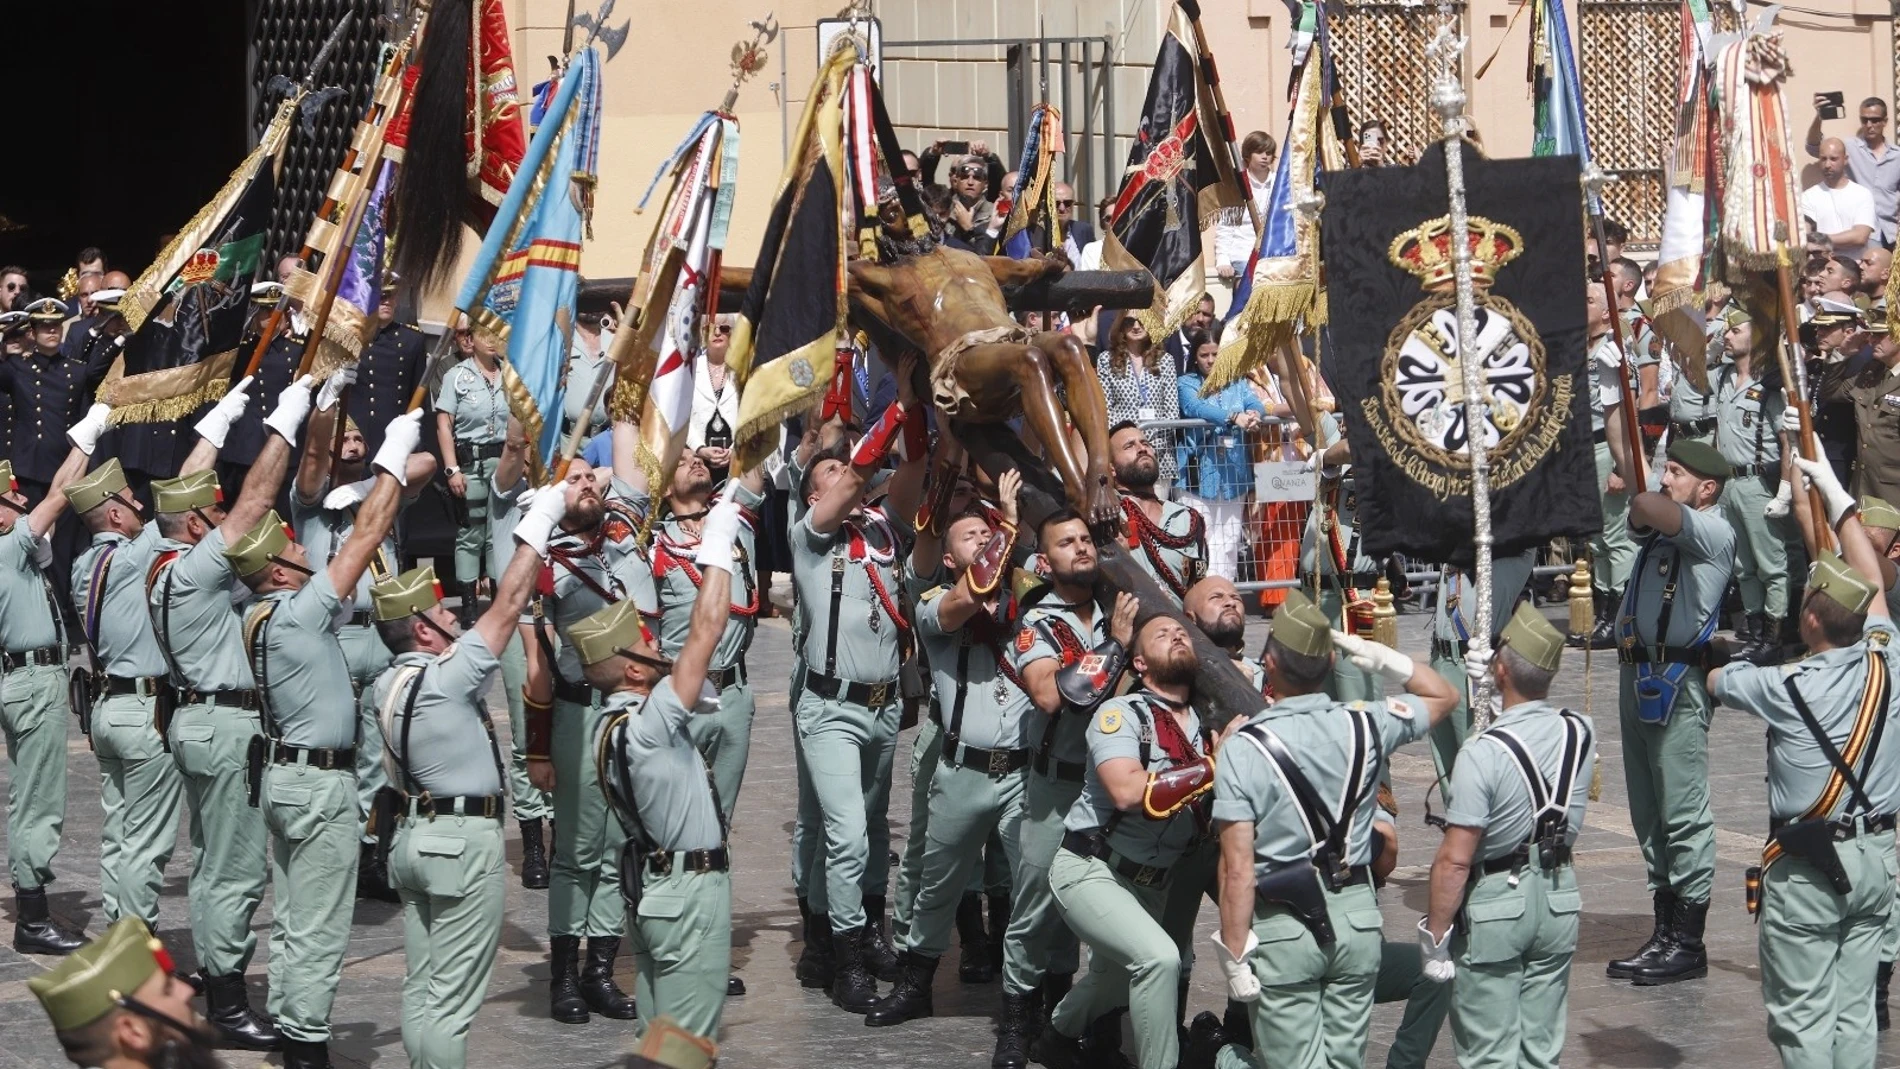 S.Santa.- Devoción y admiración en el Jueves Santo de Málaga con el traslado del Cristo de la Buena Muerte por la Legión